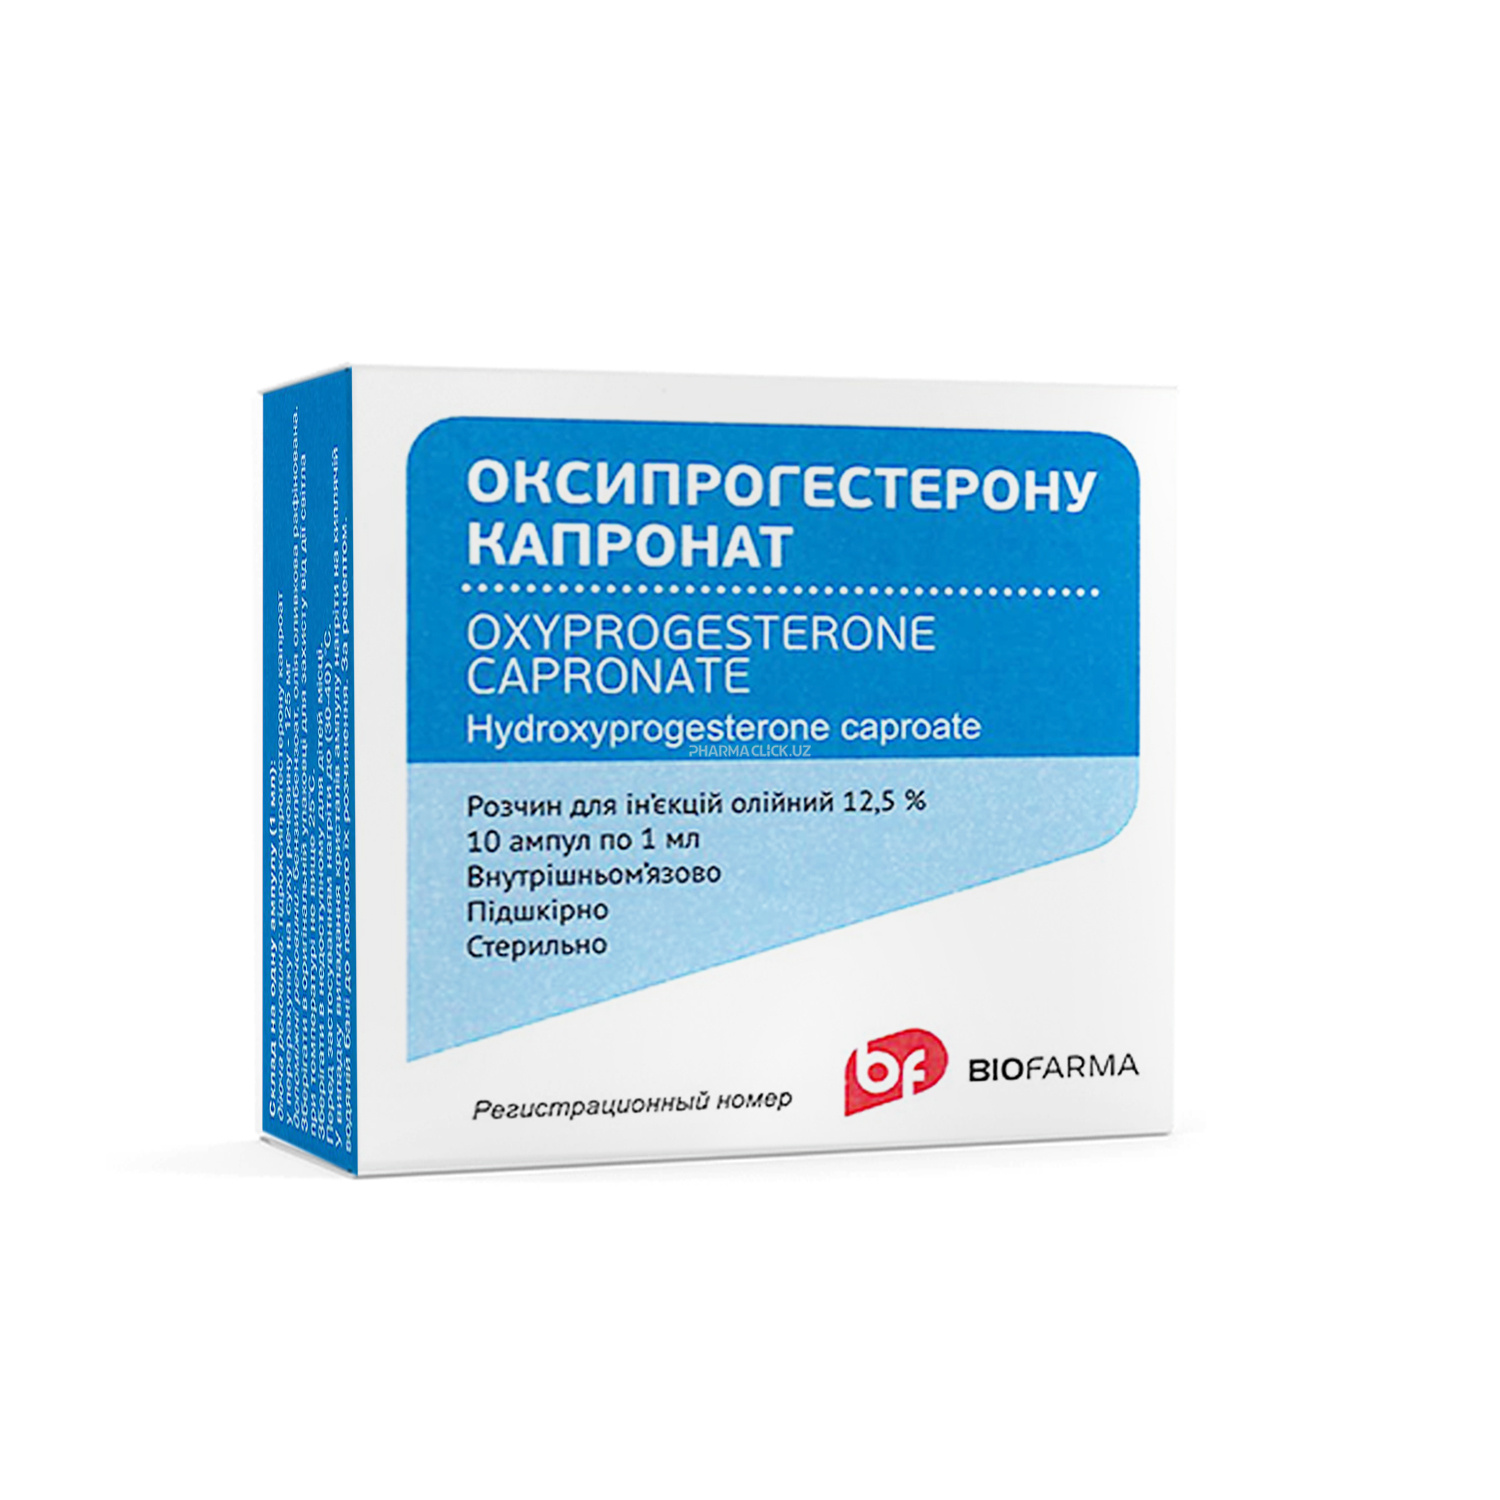 Oksiprogesterona kapronat 12.5% 1ml №10